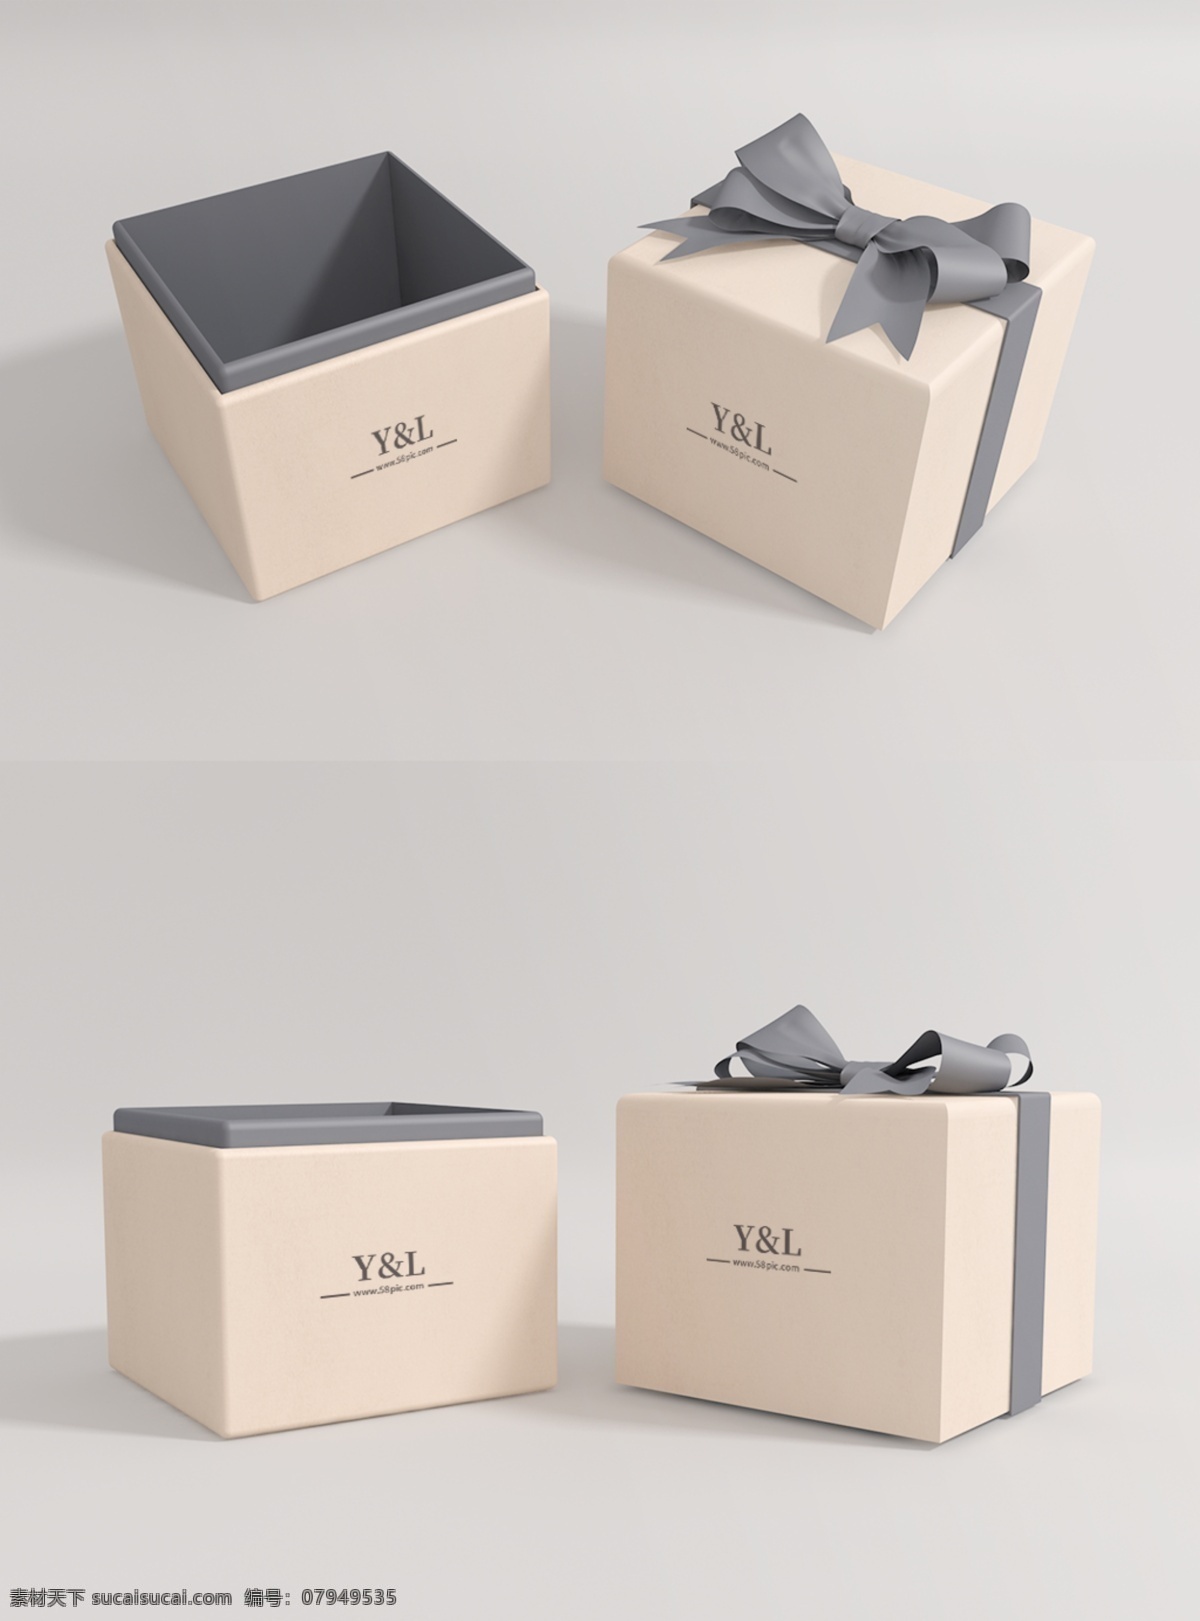 原创 精美 模型 礼品盒 首饰 盒子 样机 logo 蝴蝶结 智能图层 mockup 一键贴图 包装 高端 灰色 米色 包装样机 质感